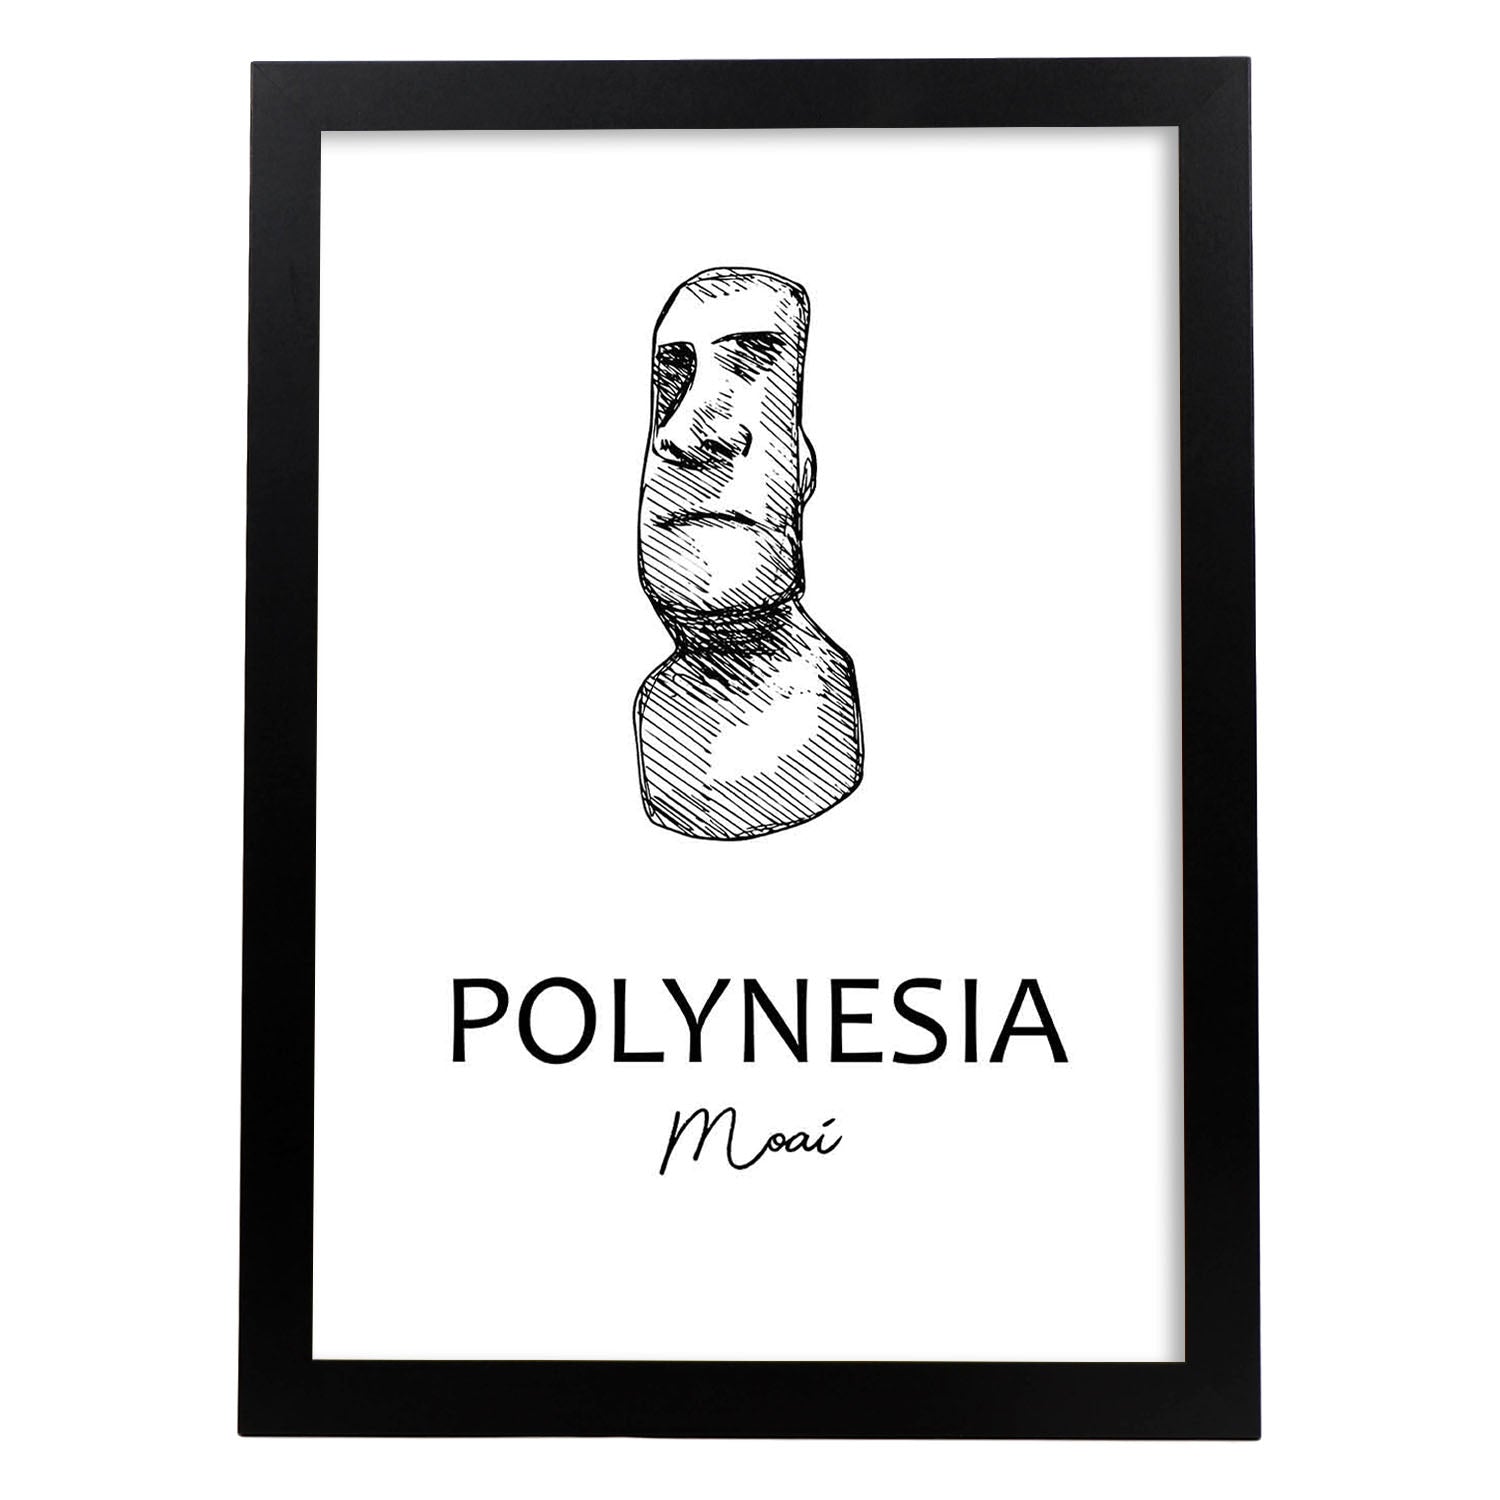 Poster de Polinesia - Moai. Láminas con monumentos de ciudades.-Artwork-Nacnic-A3-Marco Negro-Nacnic Estudio SL